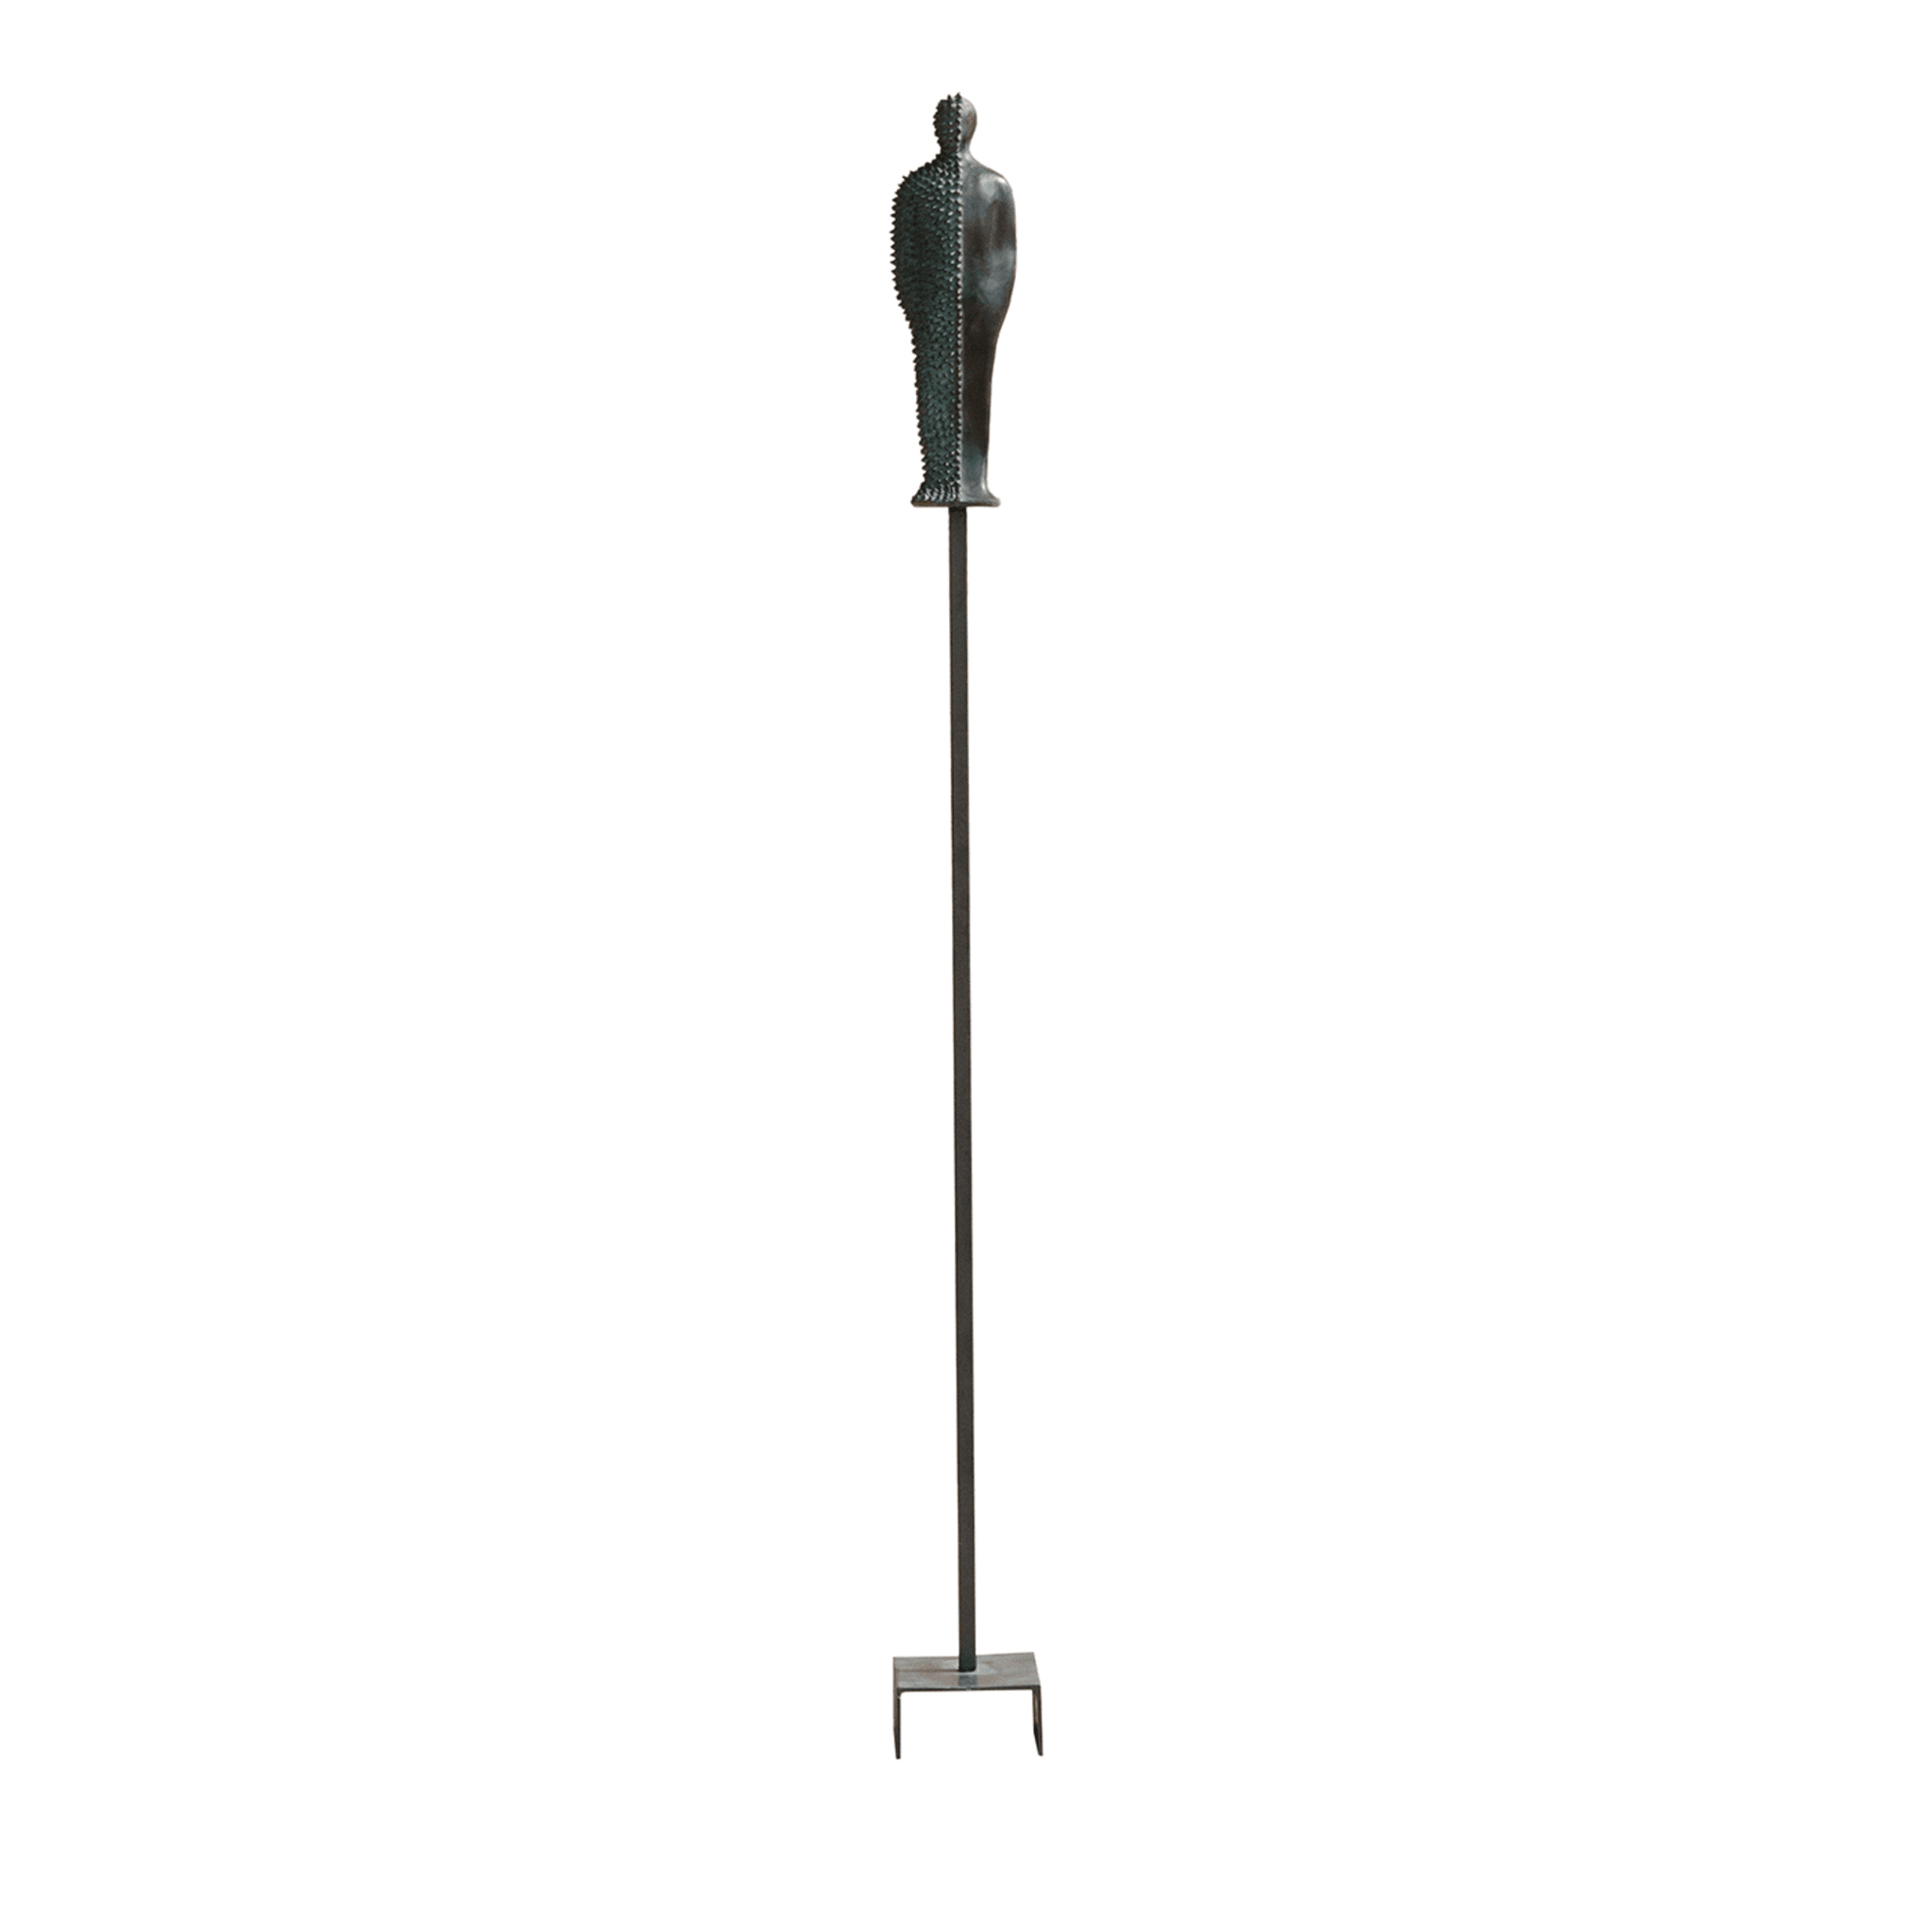 Standing Man Sculpture - Main view